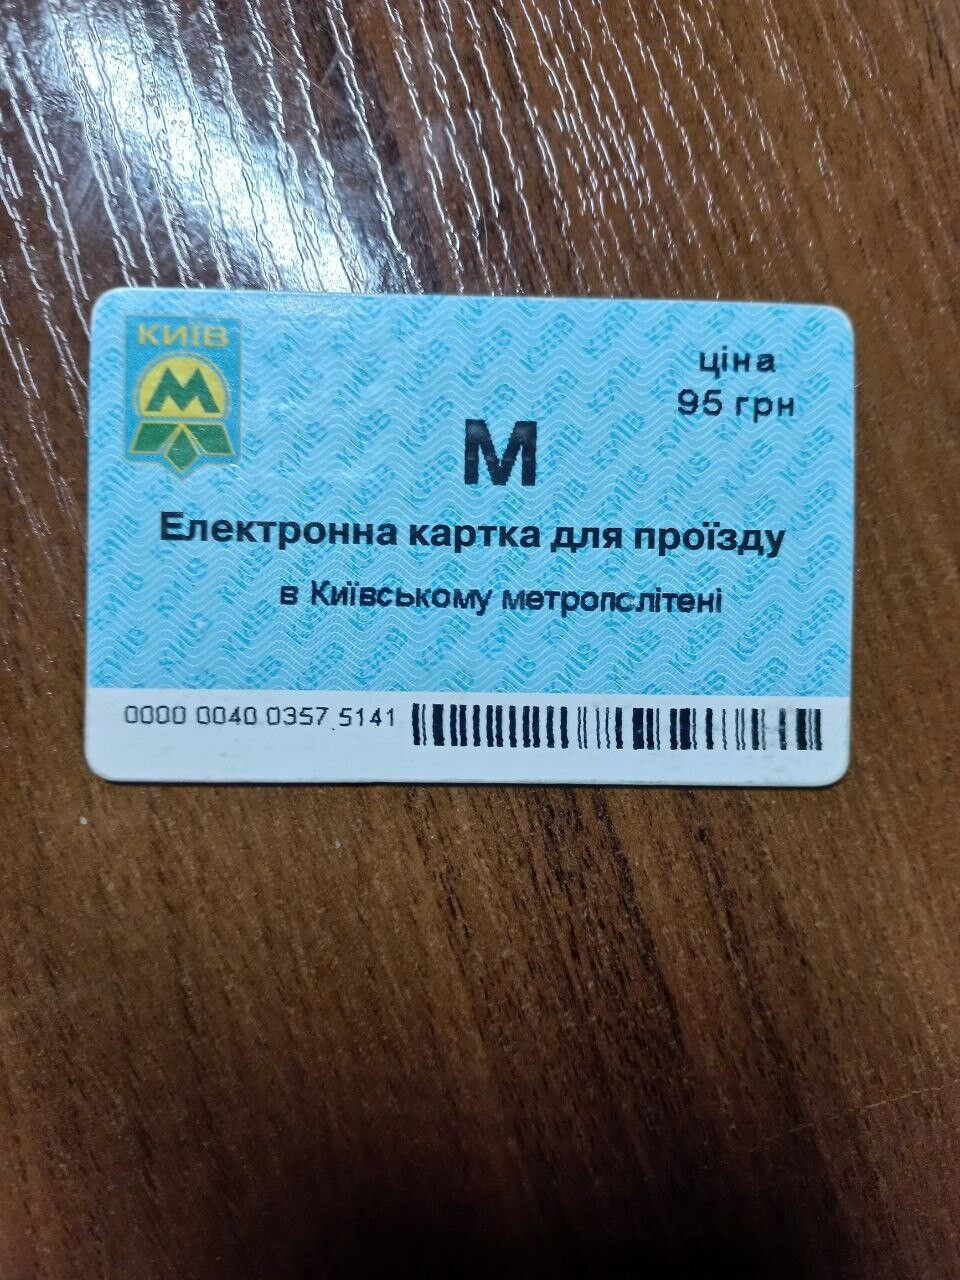 Kyiv (Kiev) metro transport monthly pass (Ukraine)